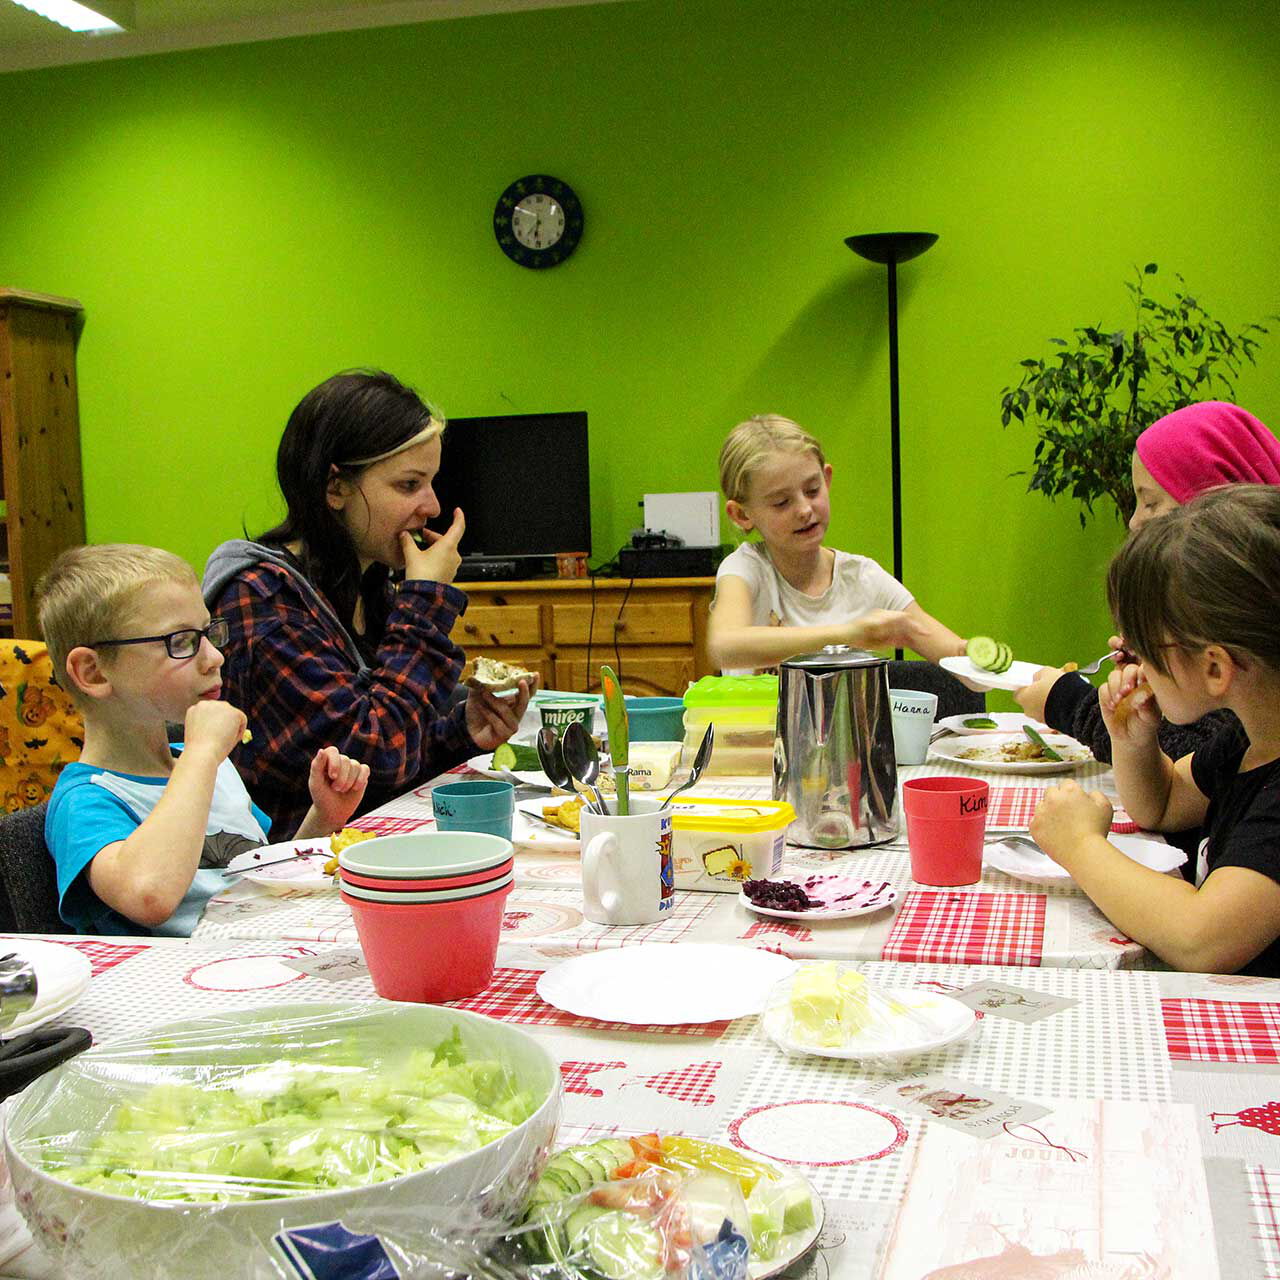 An einem großen Esstisch sitzen fünf Kinder und essen zu Abend. Auf dem Tisch stehen Teller, Schüsseln und es gibt Salat und Suppe.